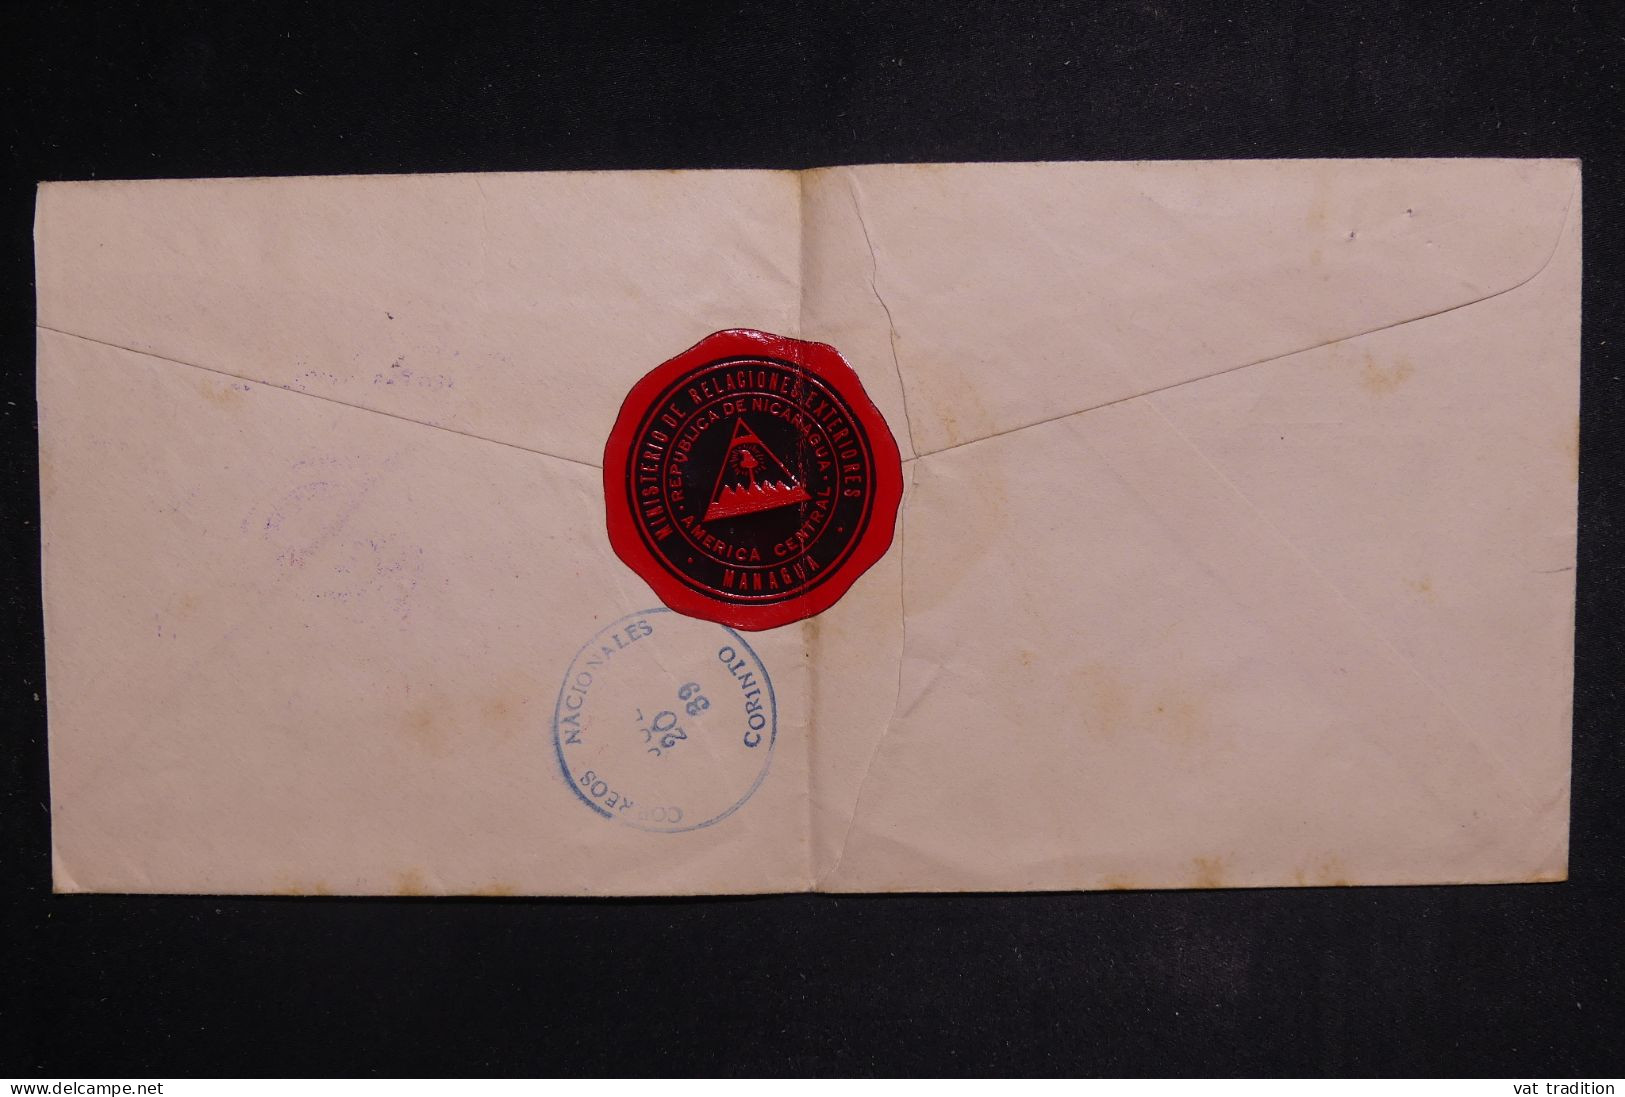 NICARAGUA - Enveloppe Du Ministère Des Relations Extérieurs Pour Paris En 1939   - L 149888 - Nicaragua